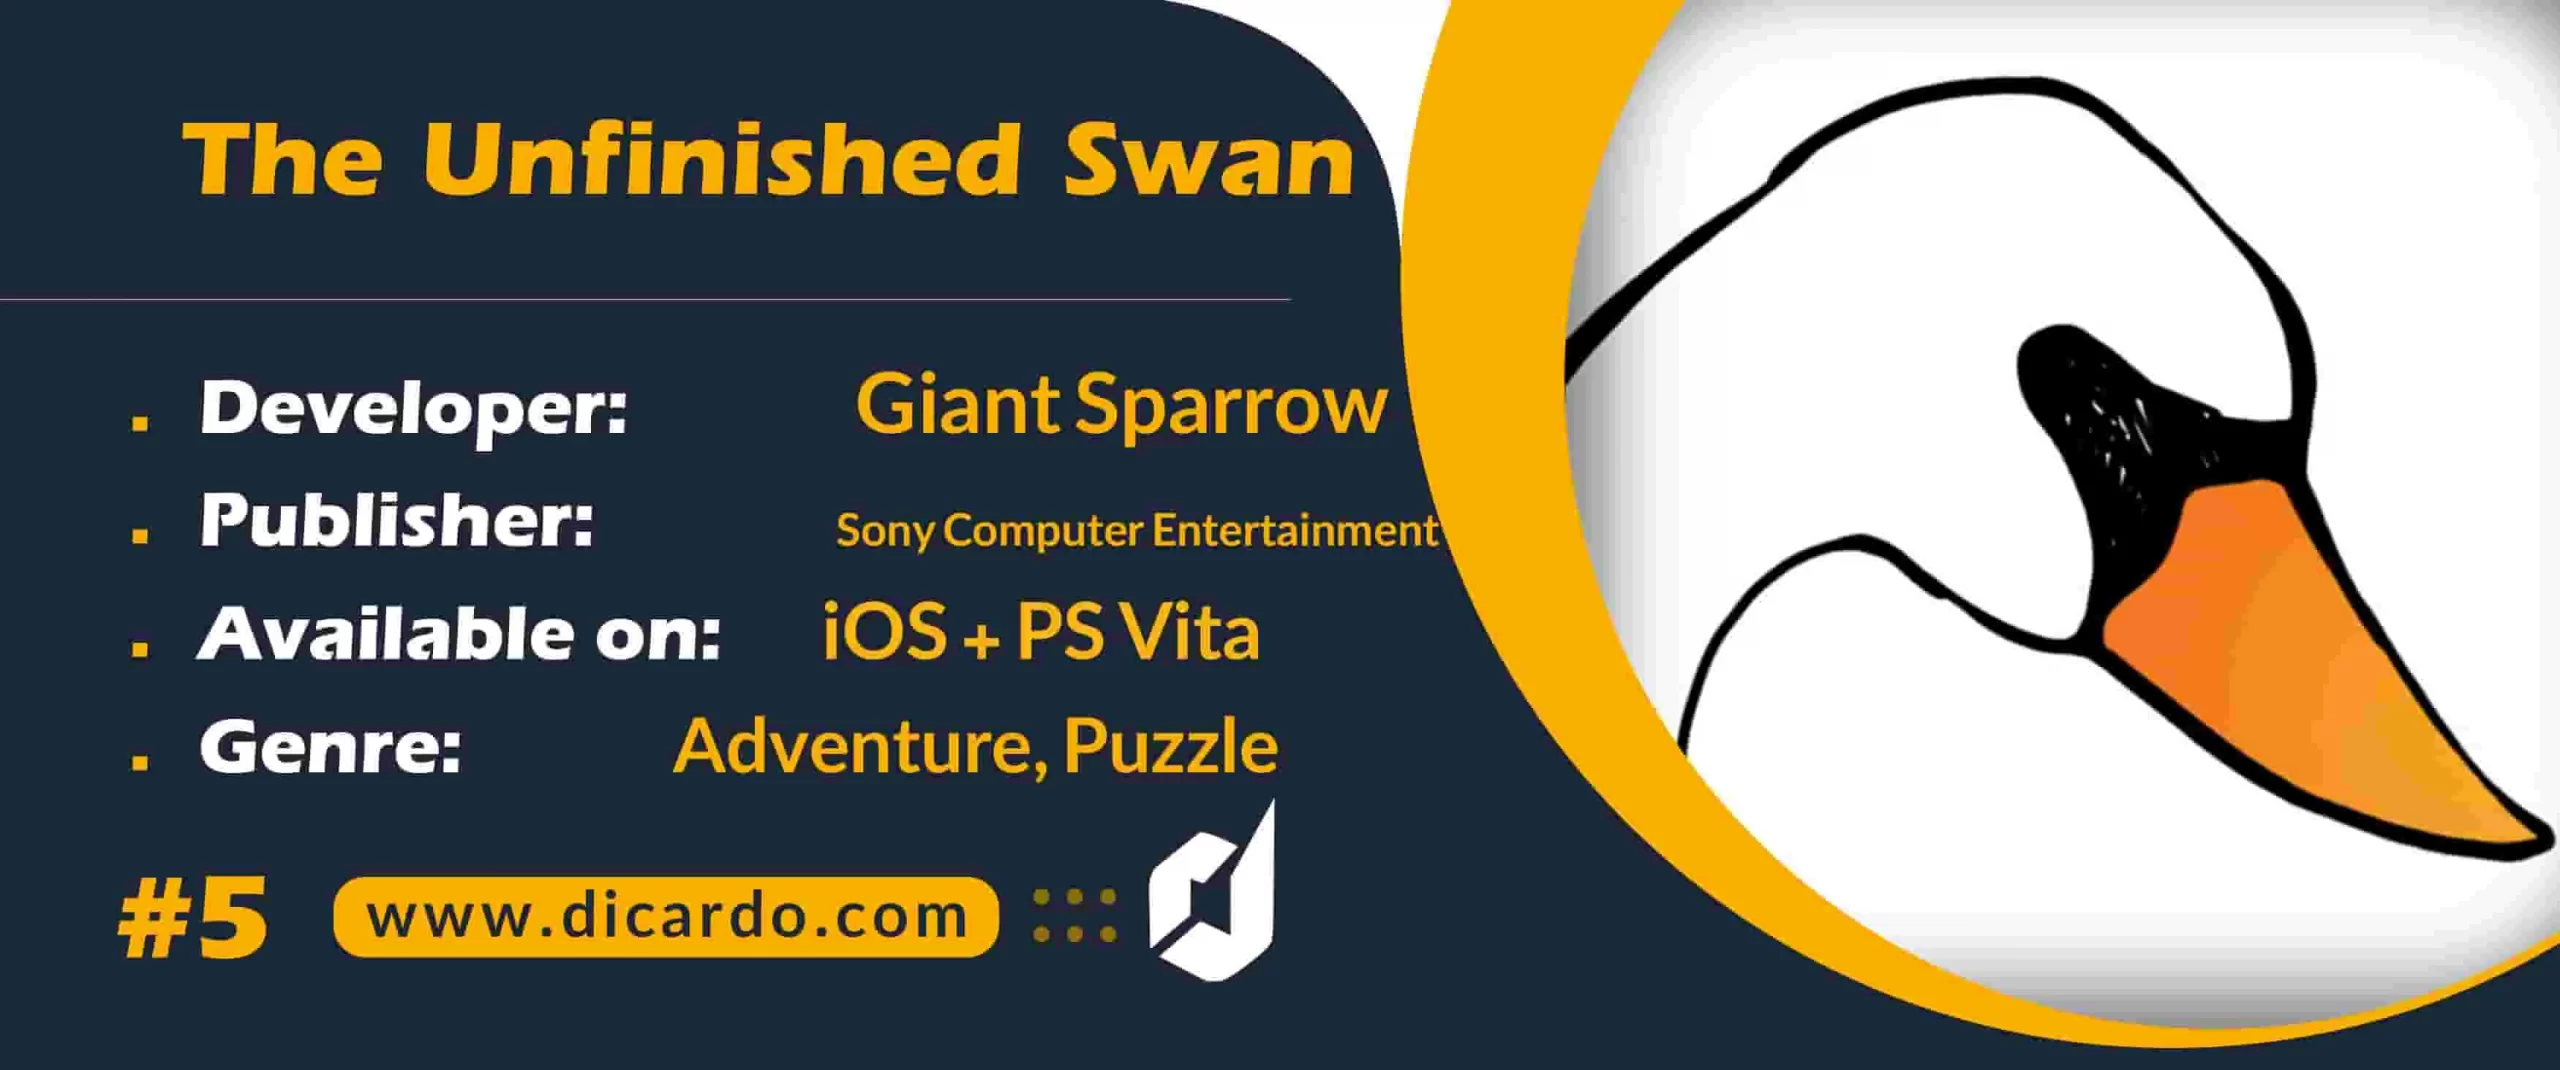 #5 دی آنفینیشد سوان The Unfinished Swan از بهترین بازیها برای iOS با سبک ماجراجویی